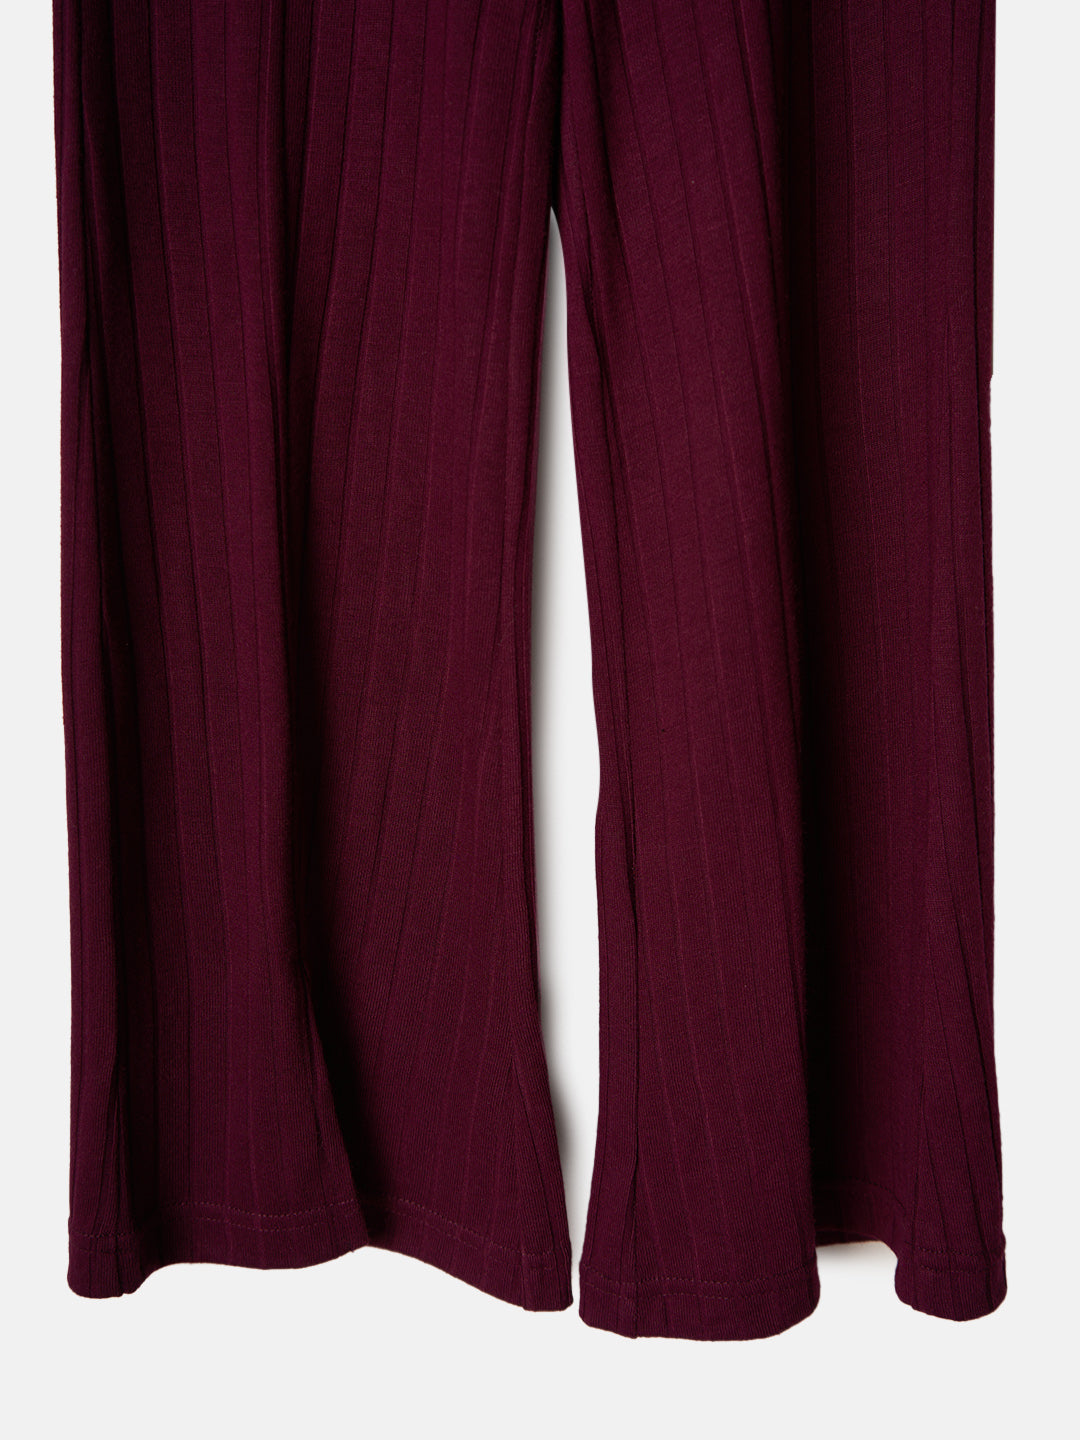 Buy Pants And Palazzos & Skirts Online at Fabindia